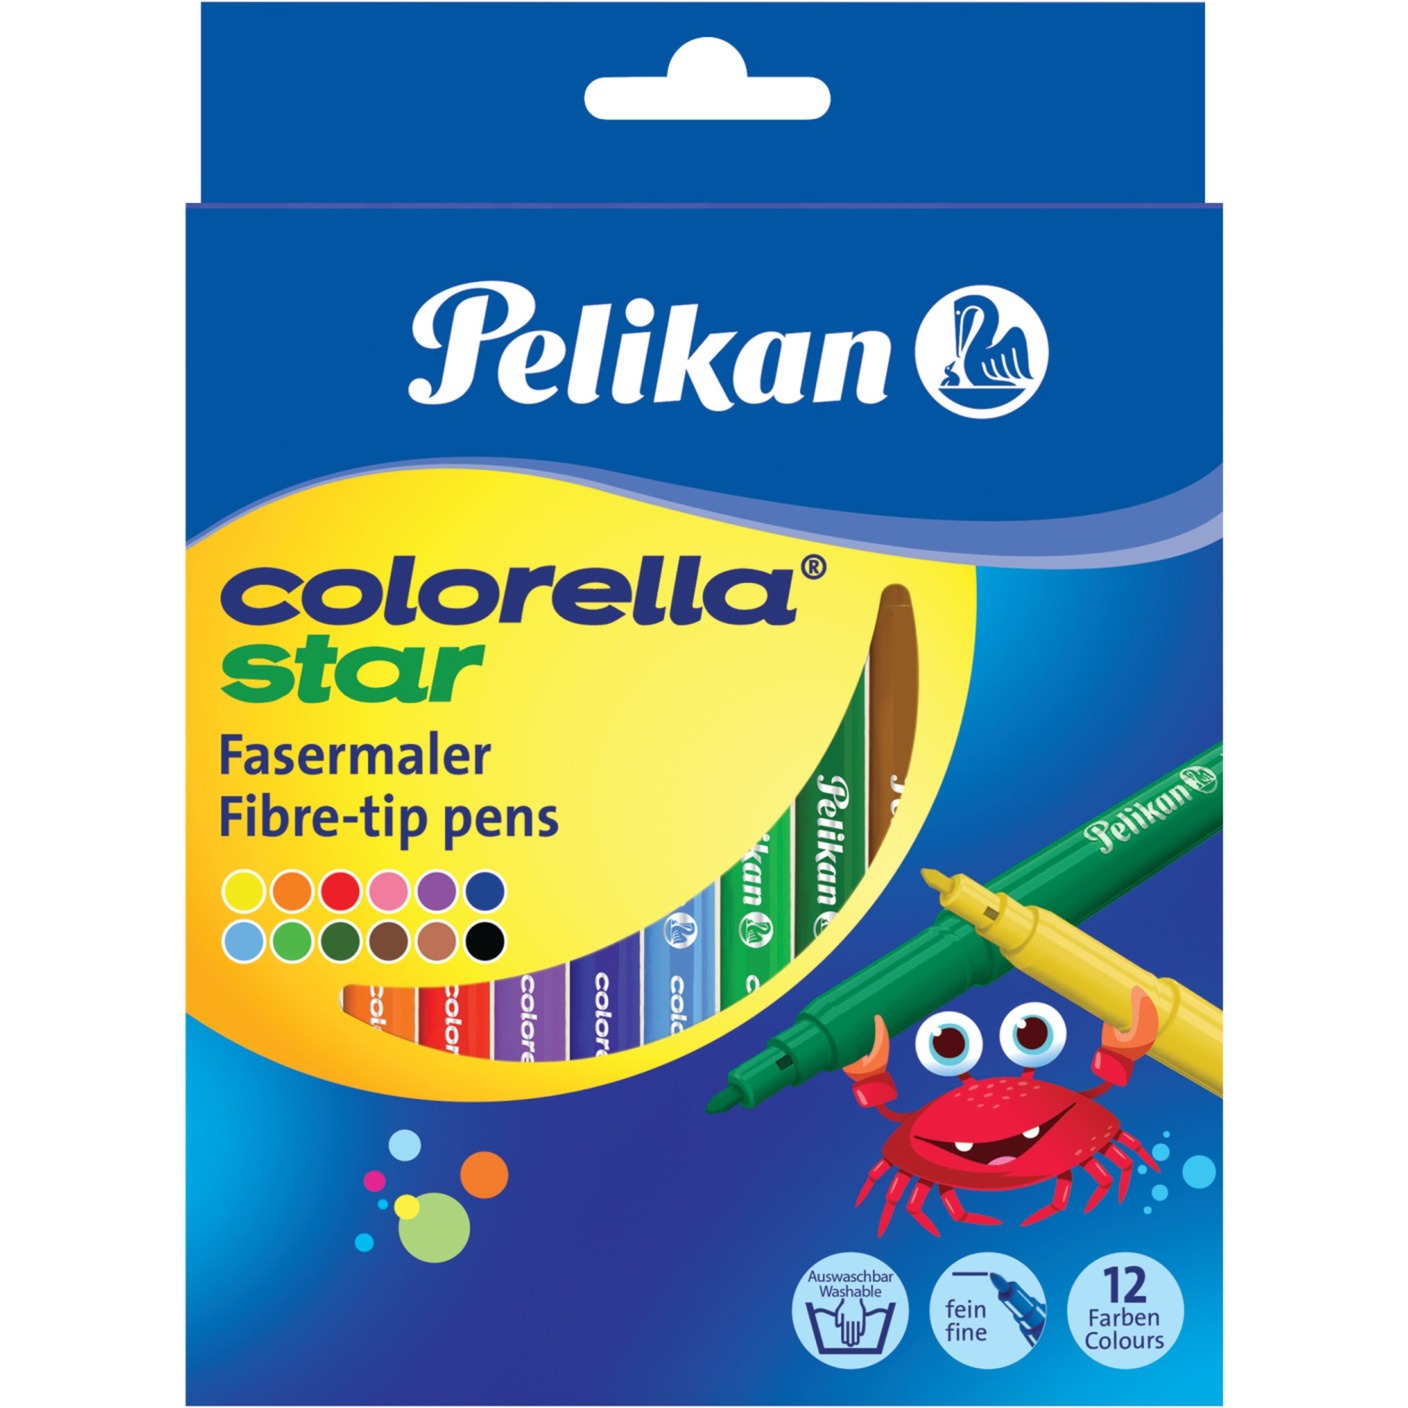 Image of Alternate - Colorella Star C302/12, Stift online einkaufen bei Alternate